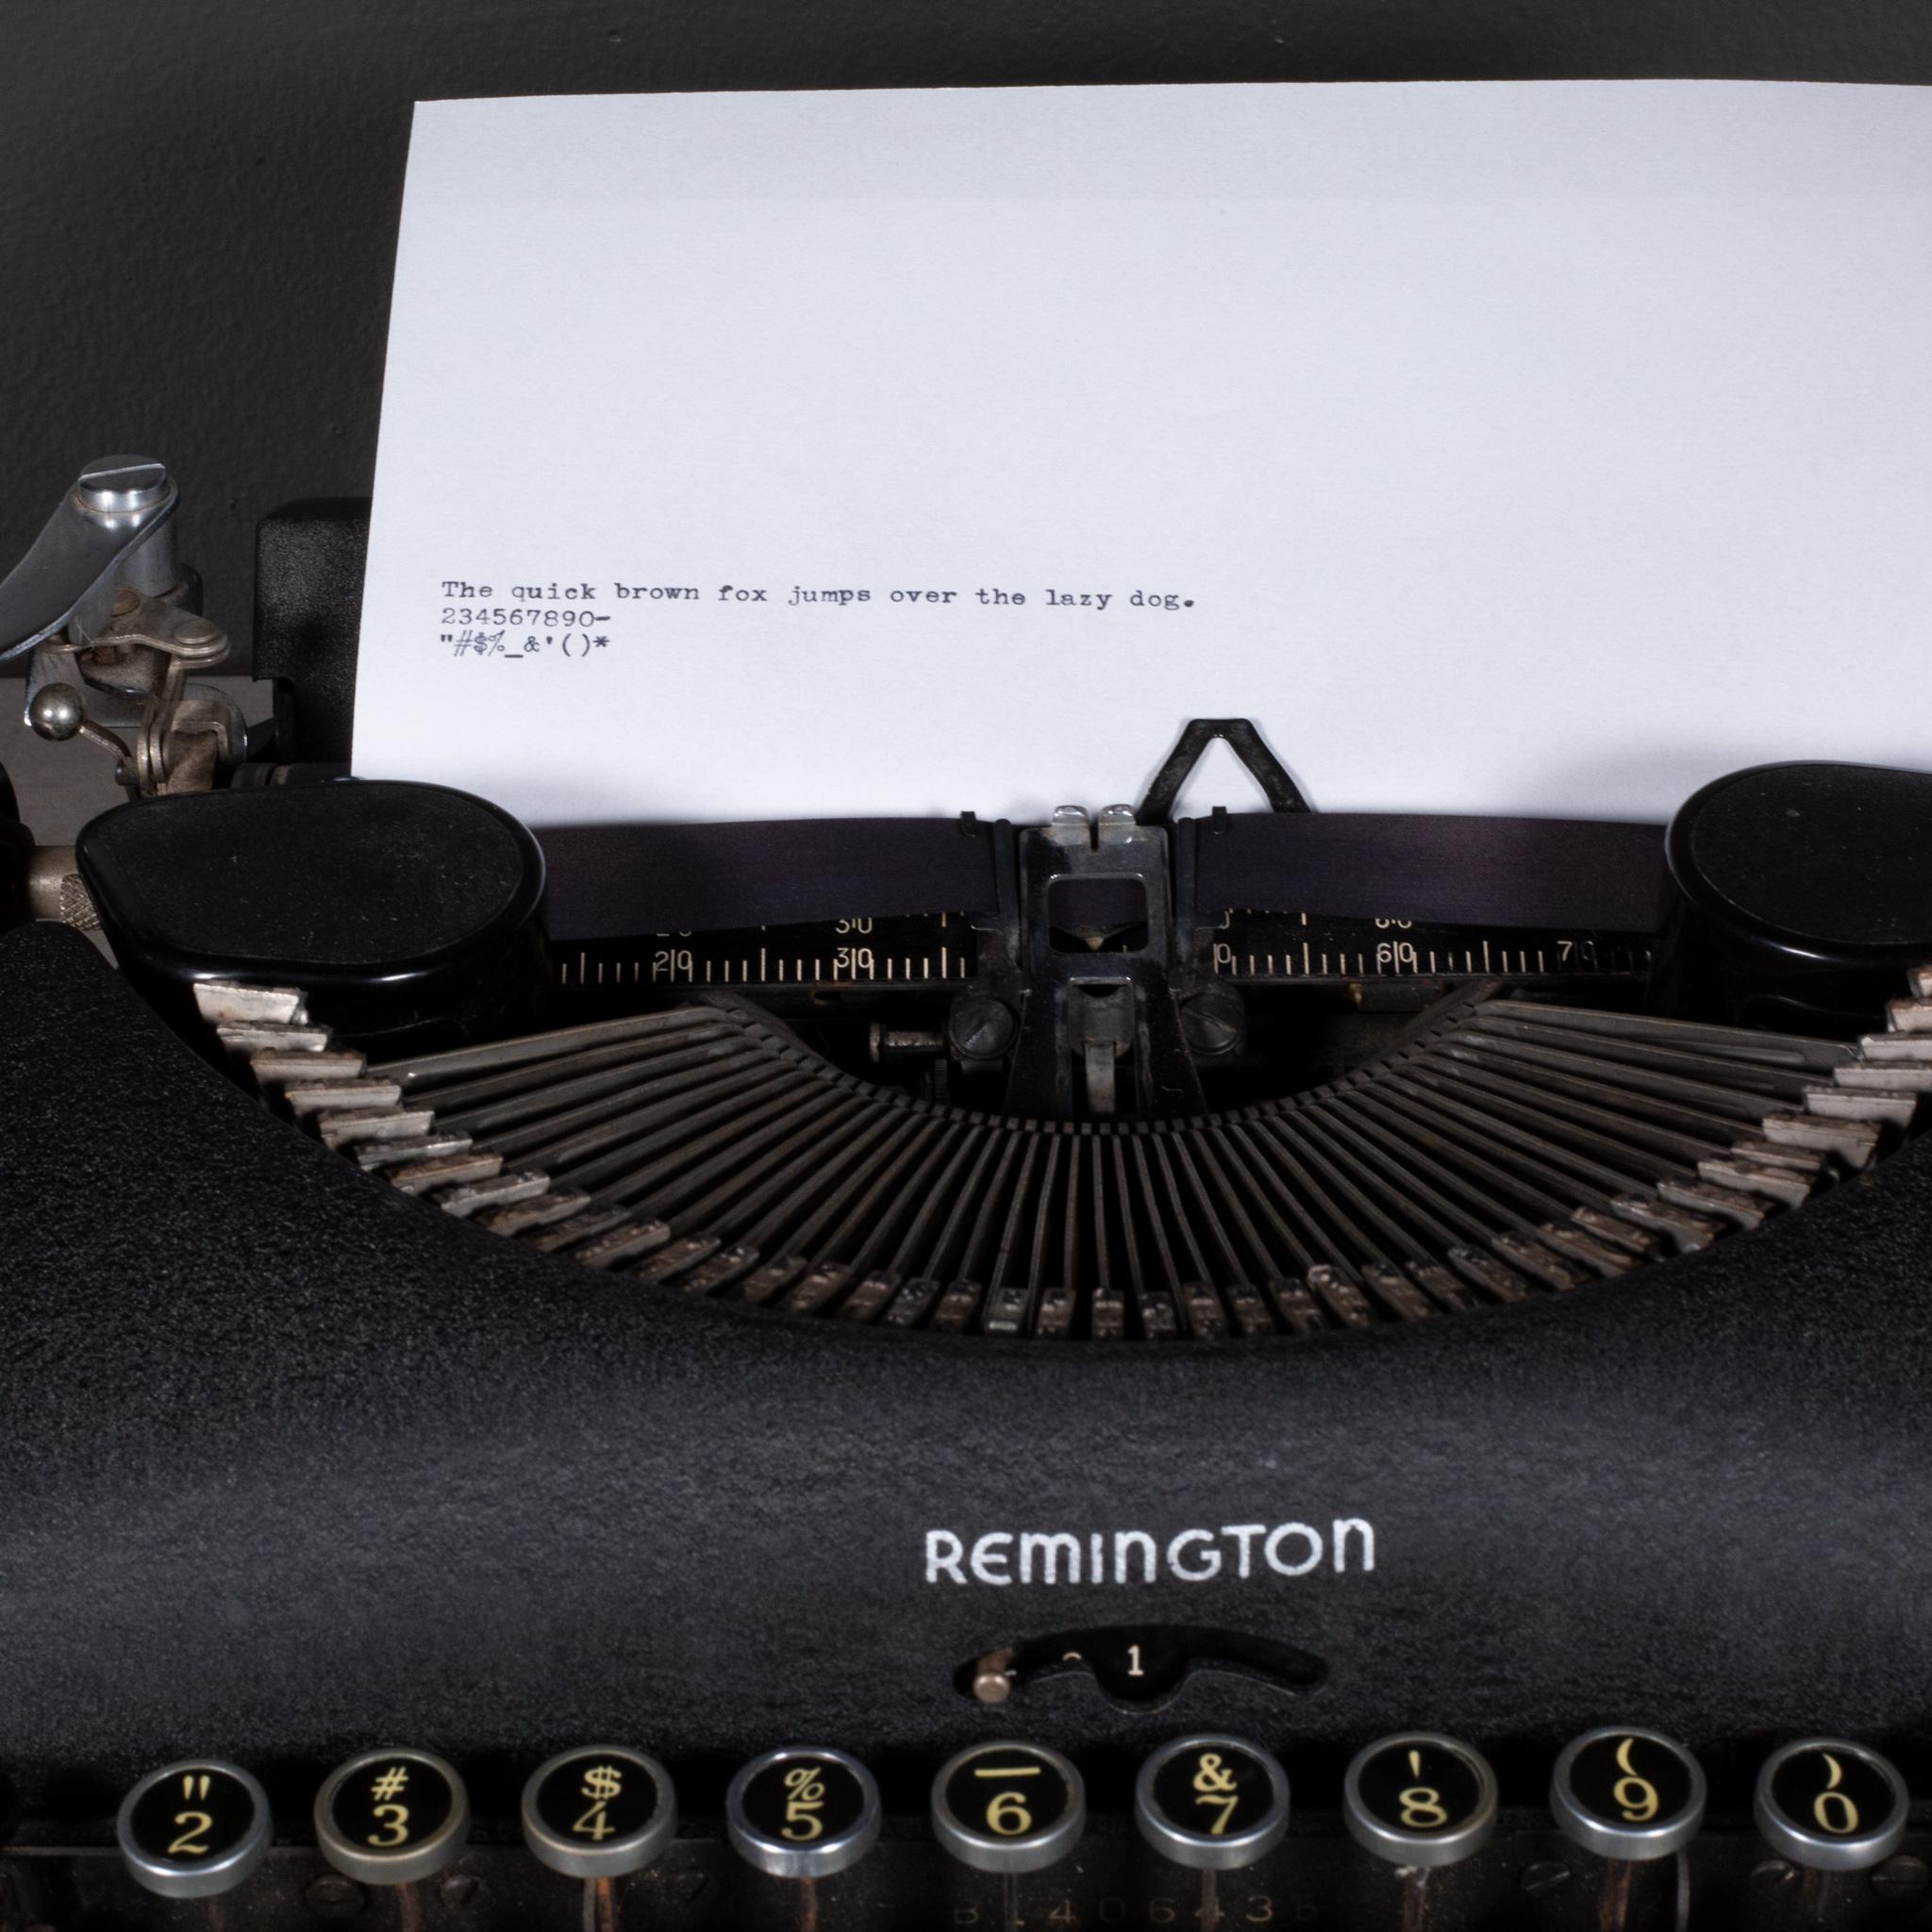 remington 5 typewriter value